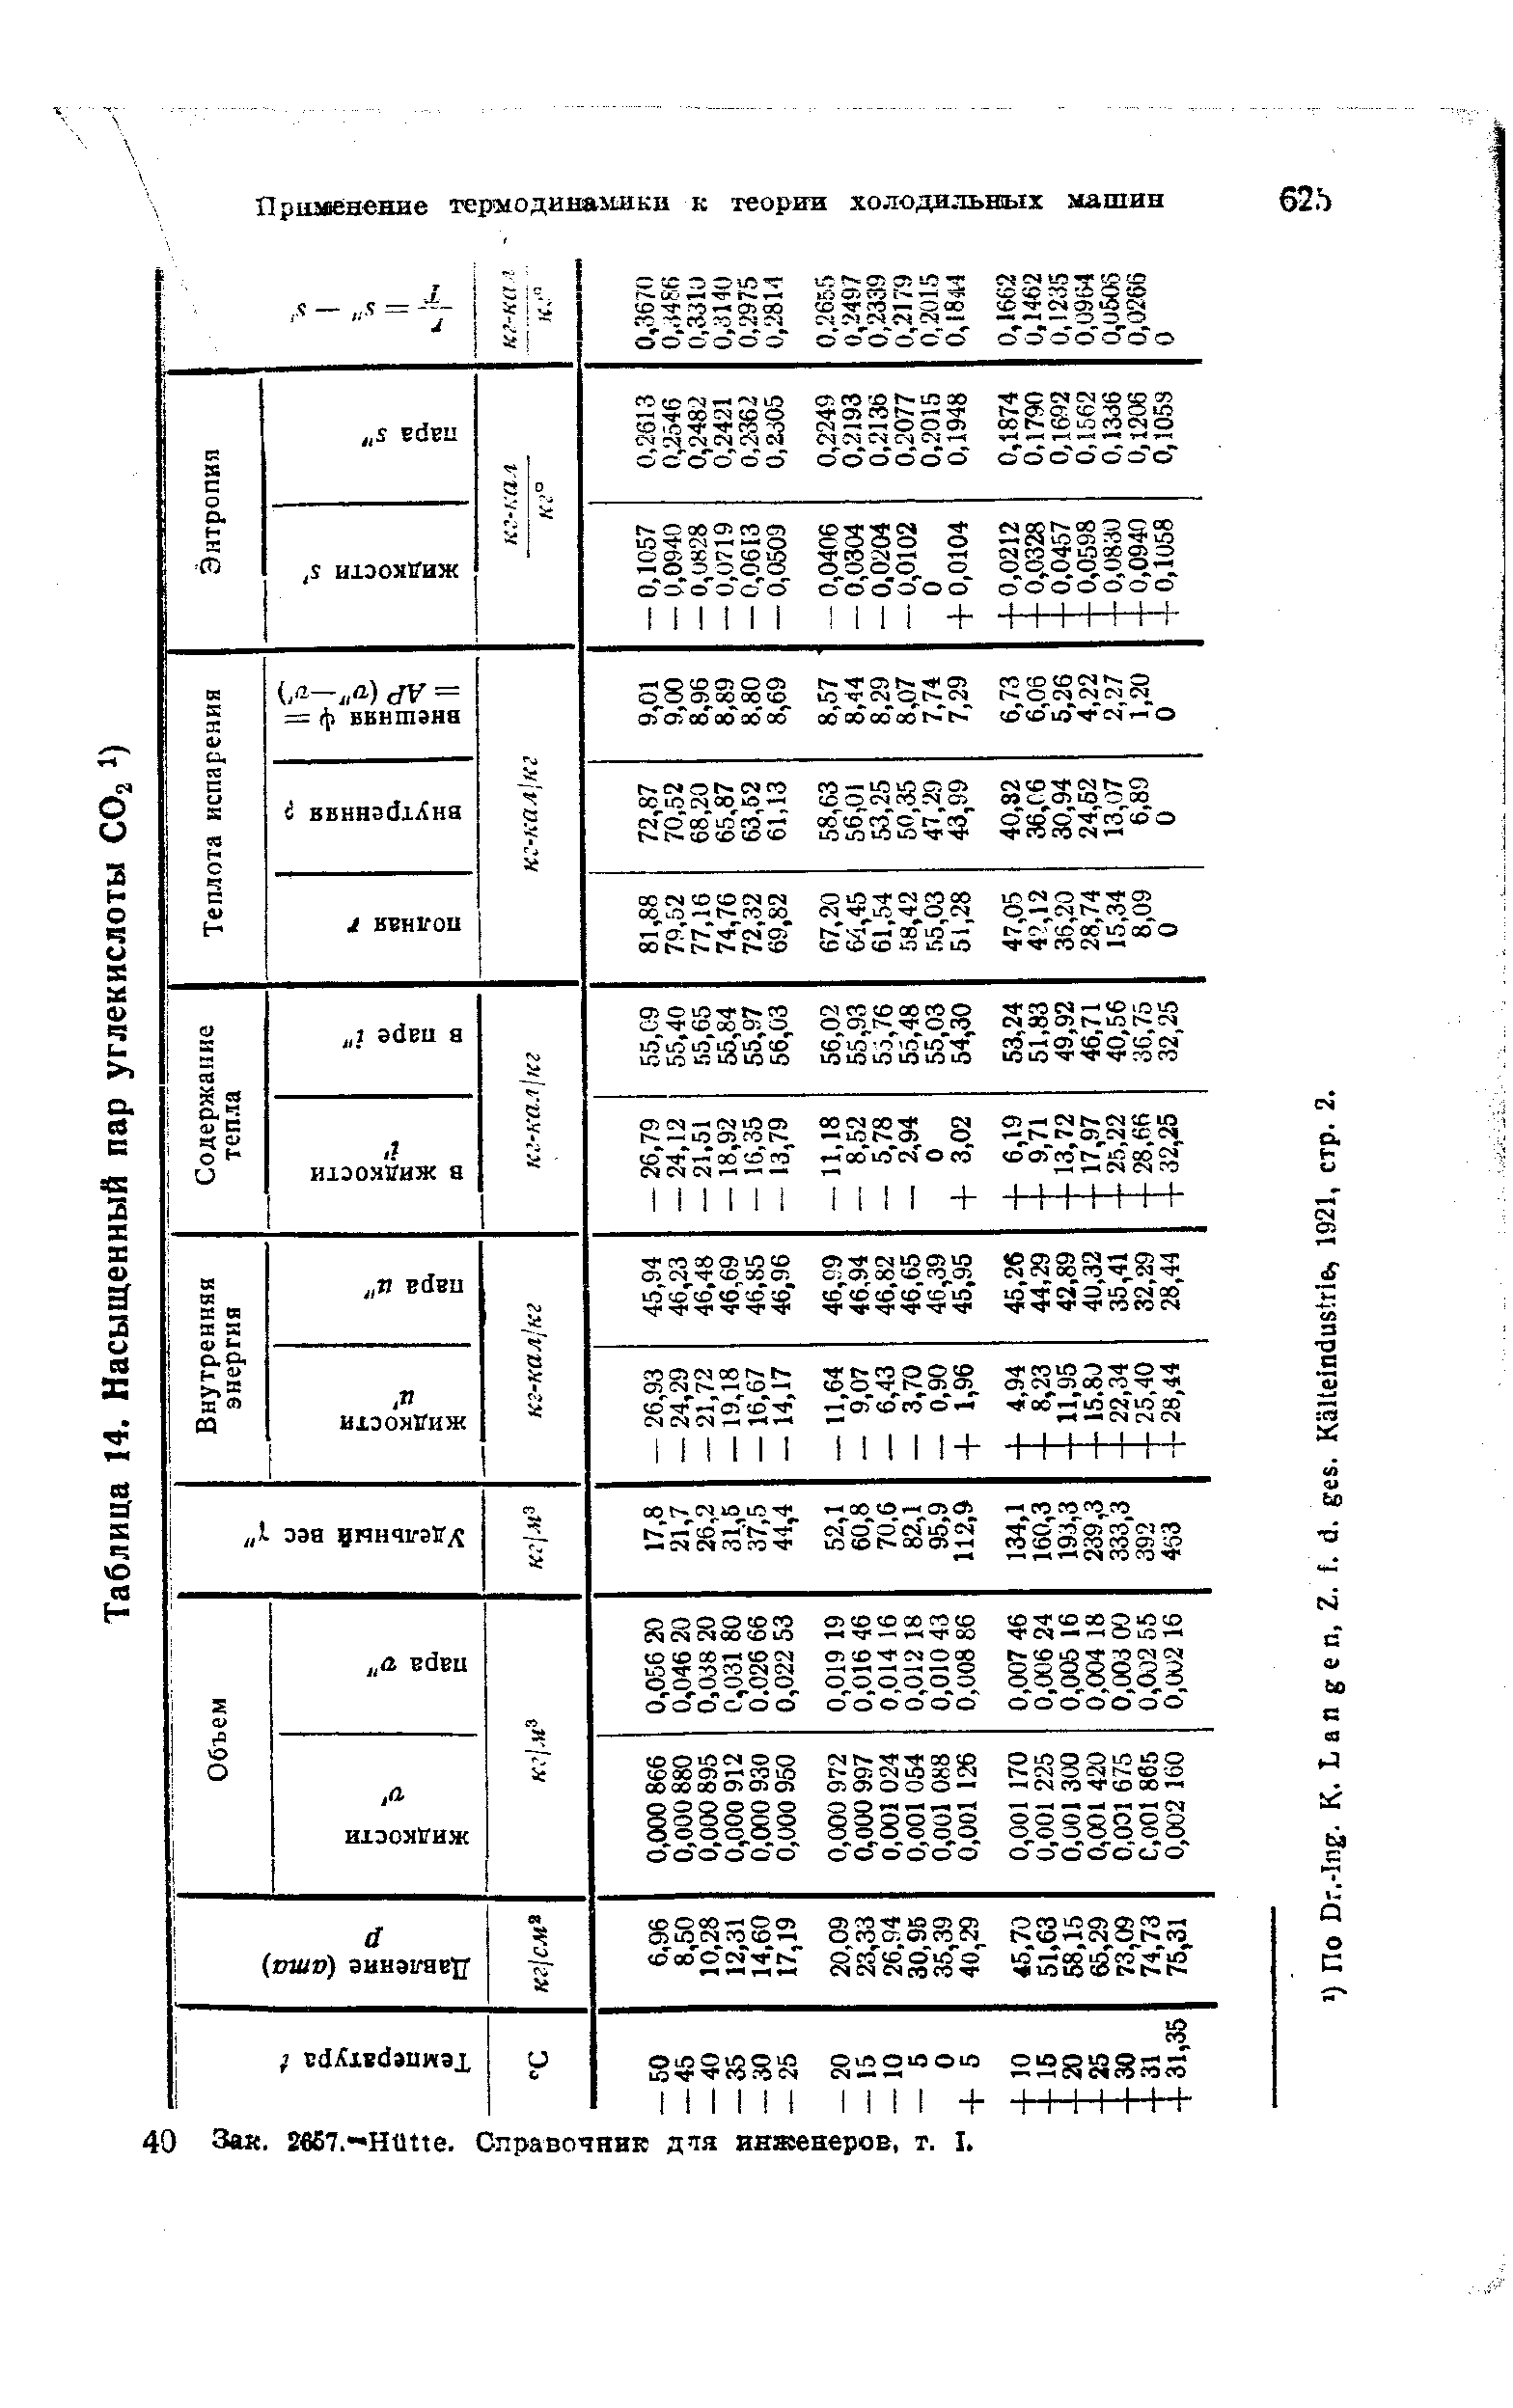 Таблица 14, Насыщенный пар углекислоты Og
